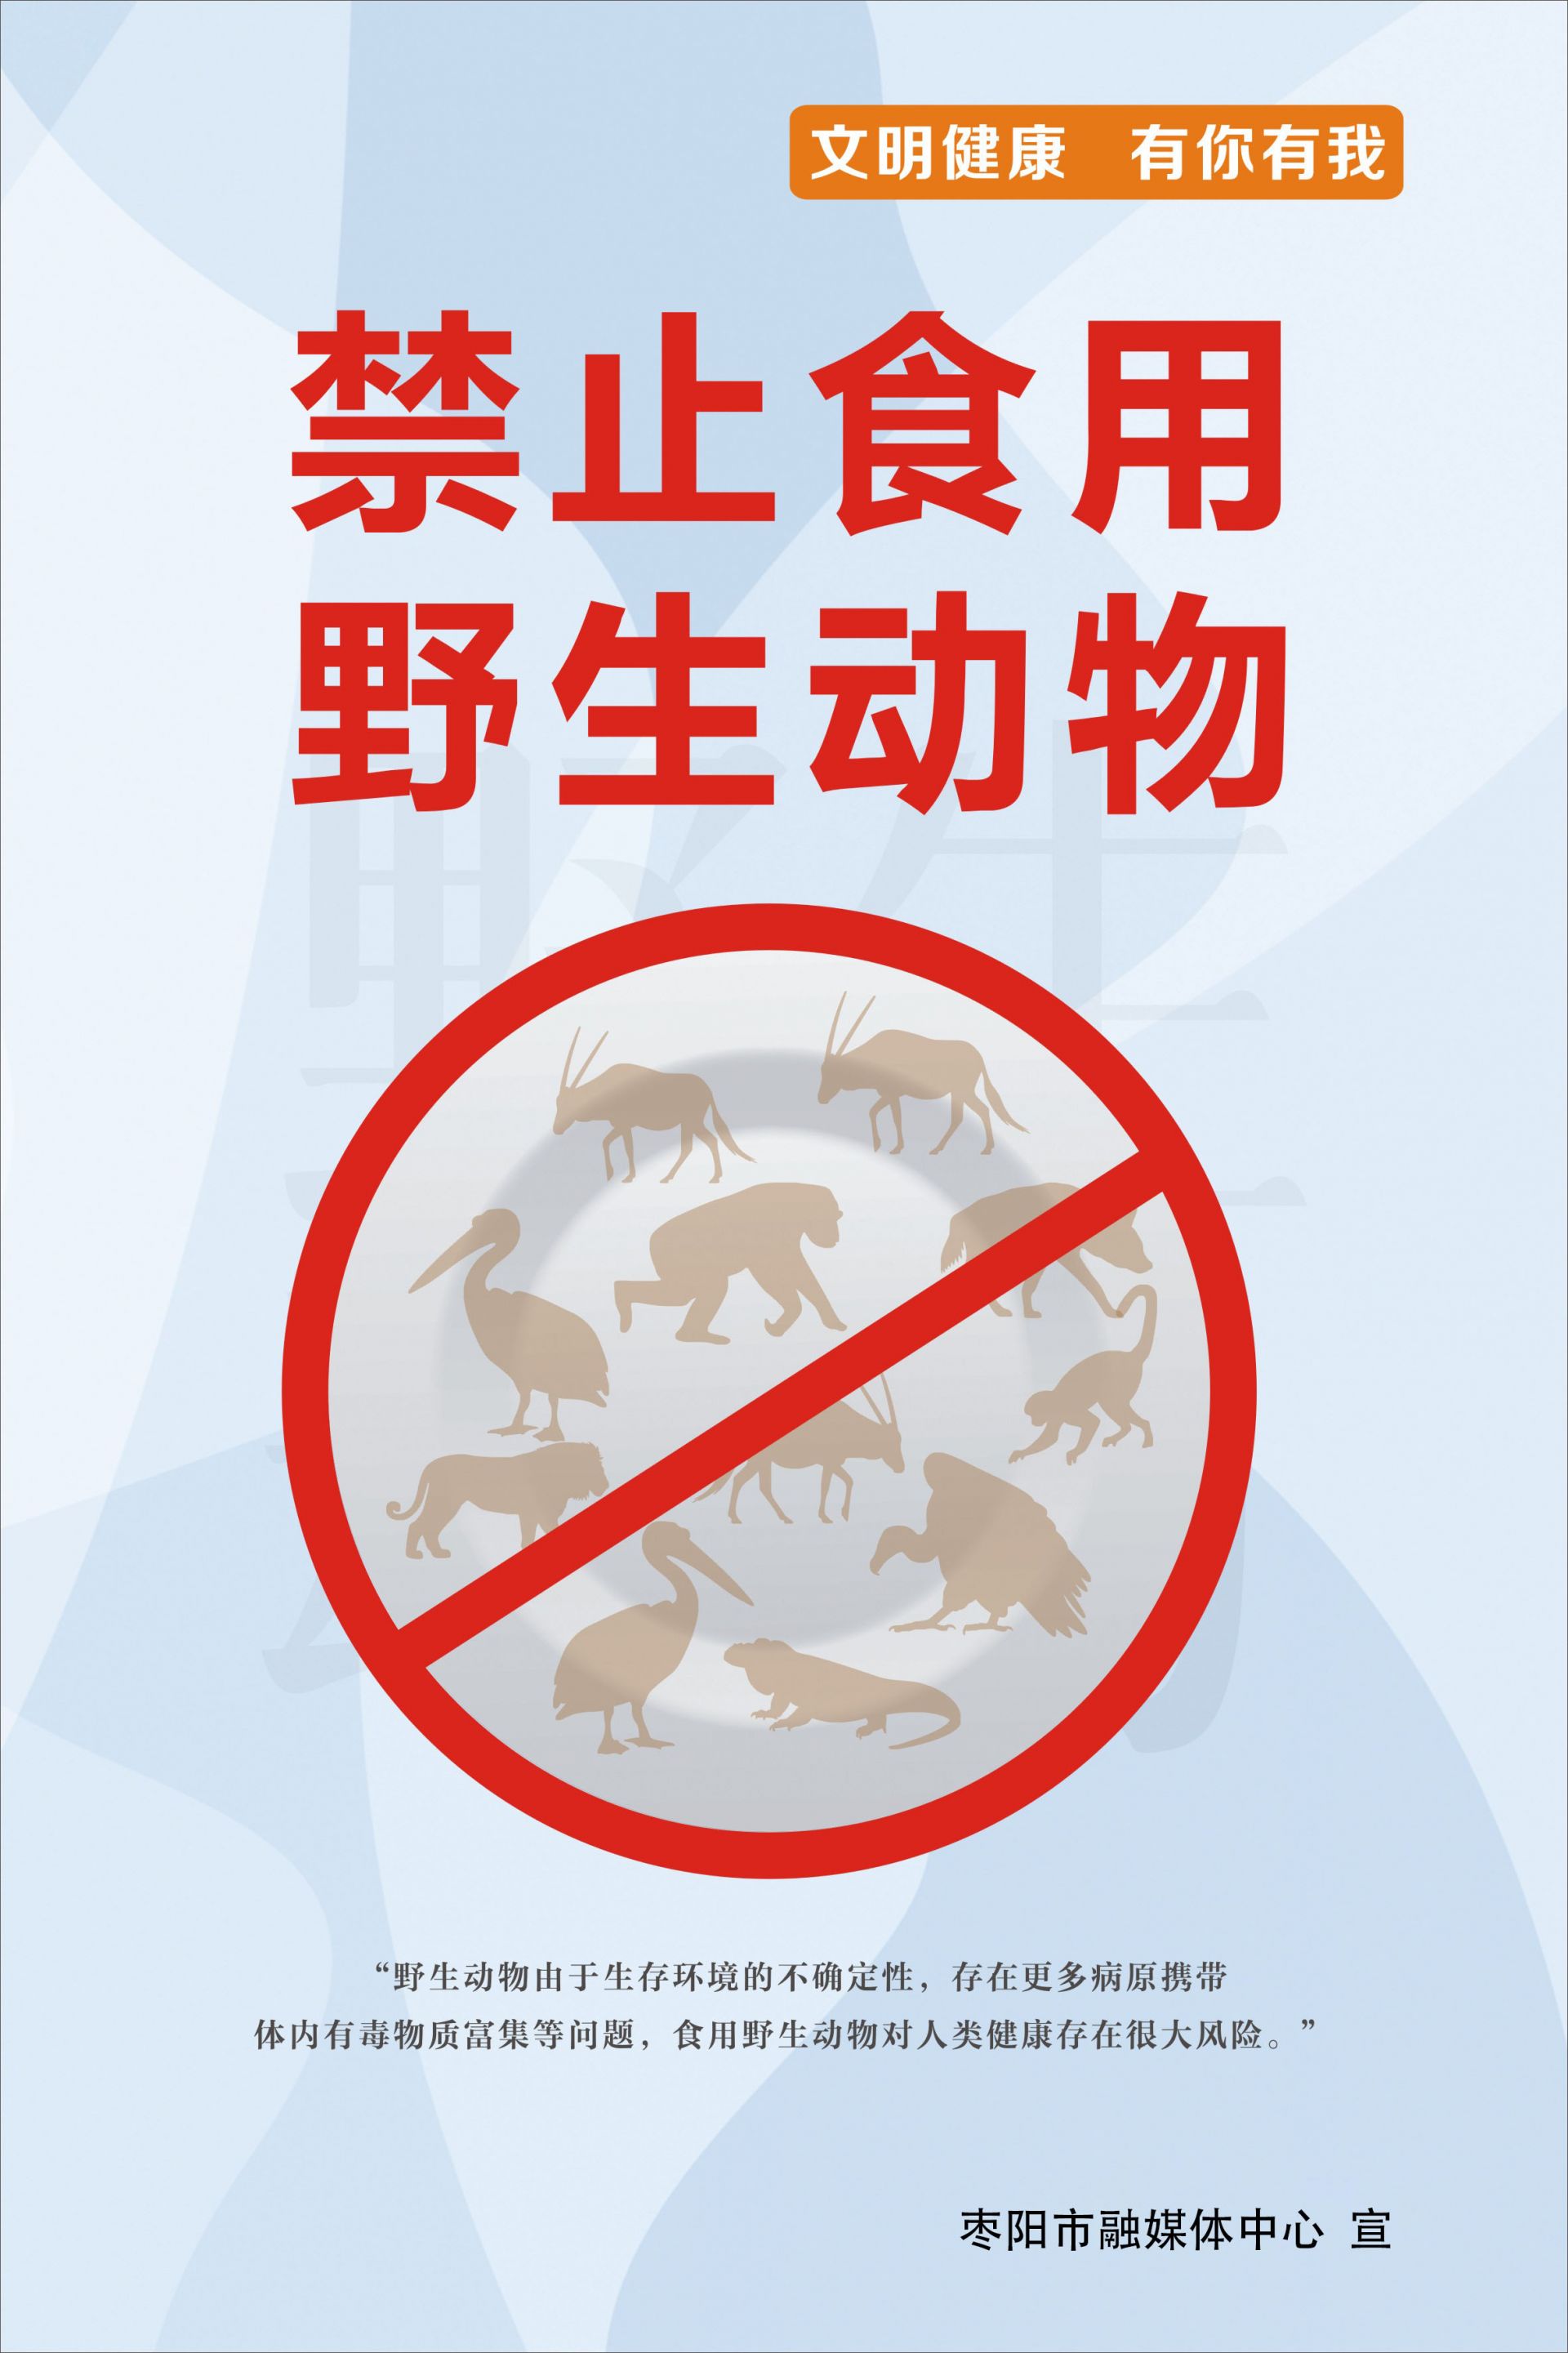 禁止捕杀野生动物标语图片